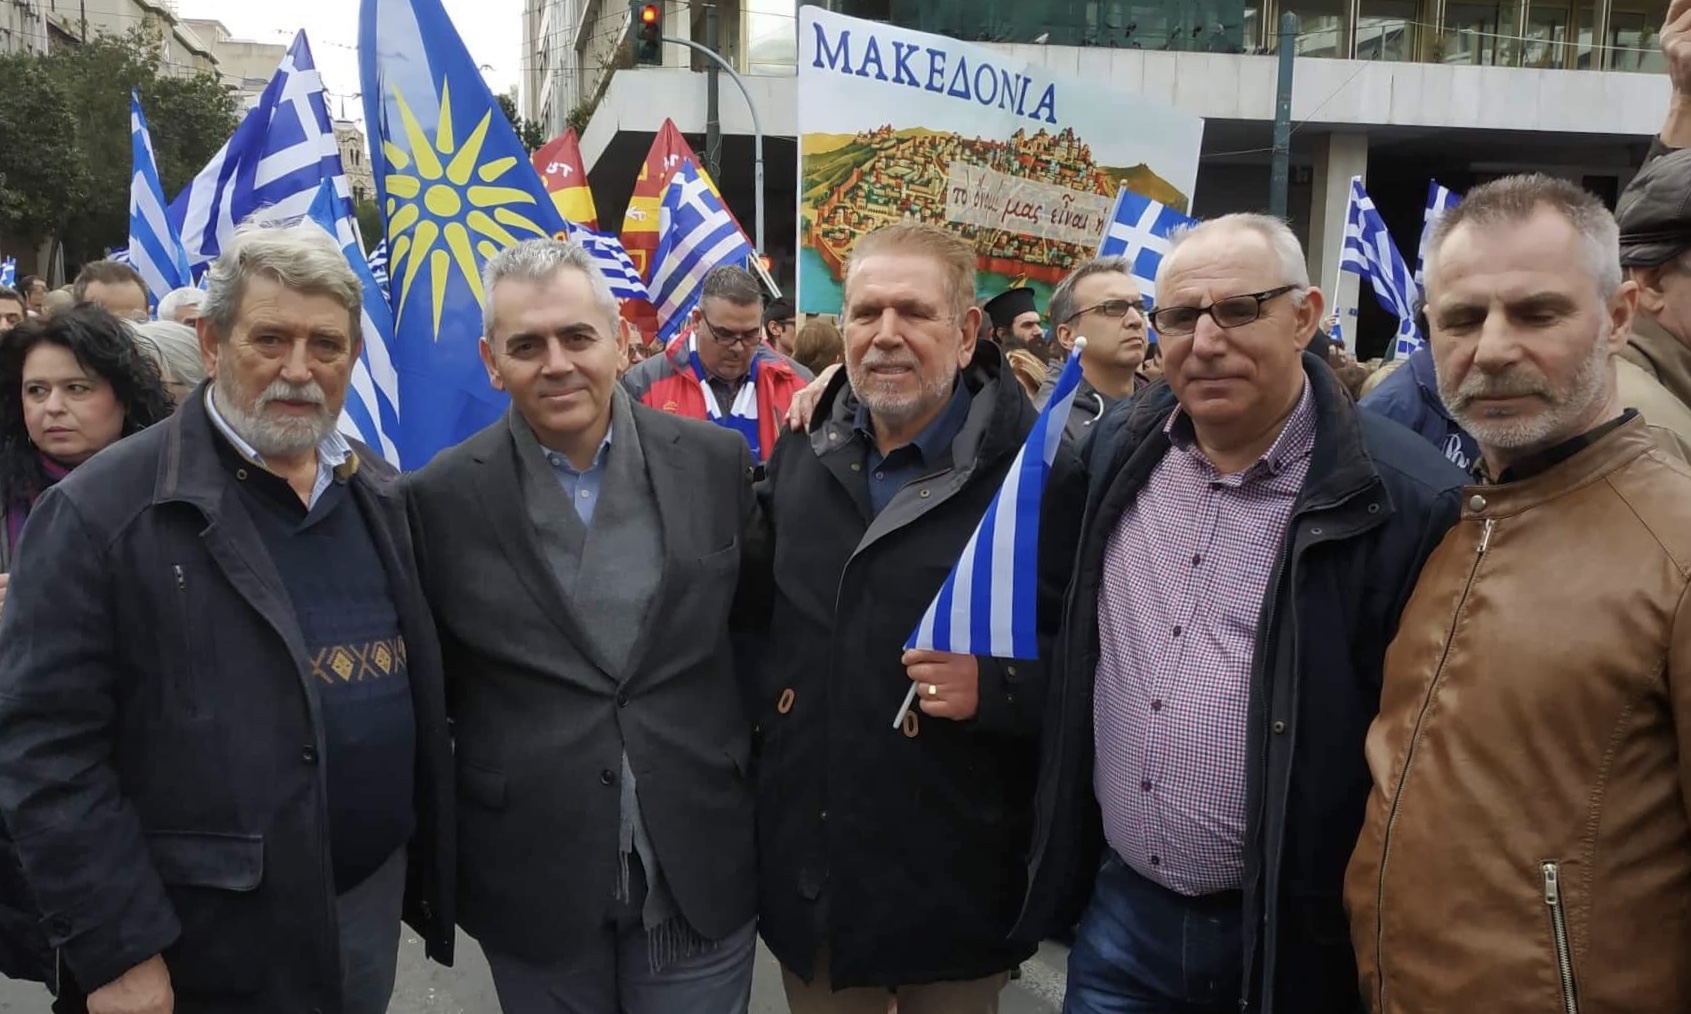 Ο Μάξιμος Χαρακόπουλος στο συλλαλητήριο για τη Μακεδονία